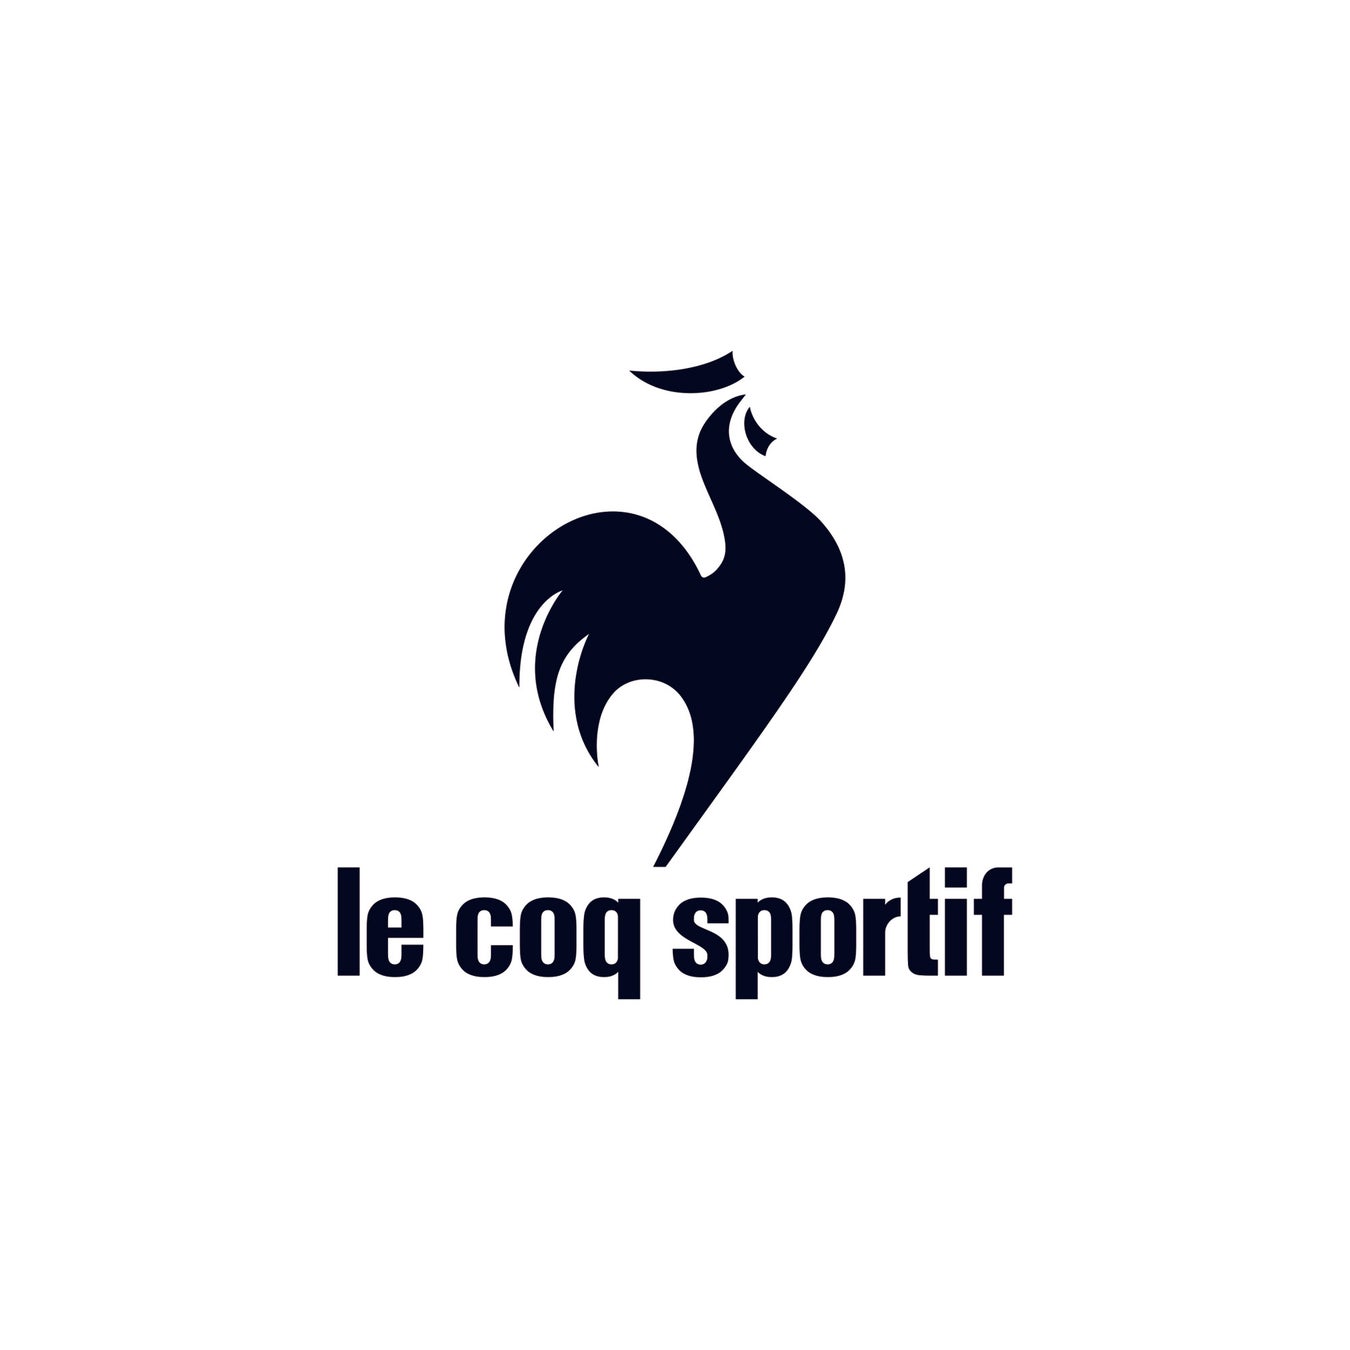 仏スポーツブランド「le coq sportif」と初コラボレーション！トリコロールカラーをテーマにしたウエアやシュ...